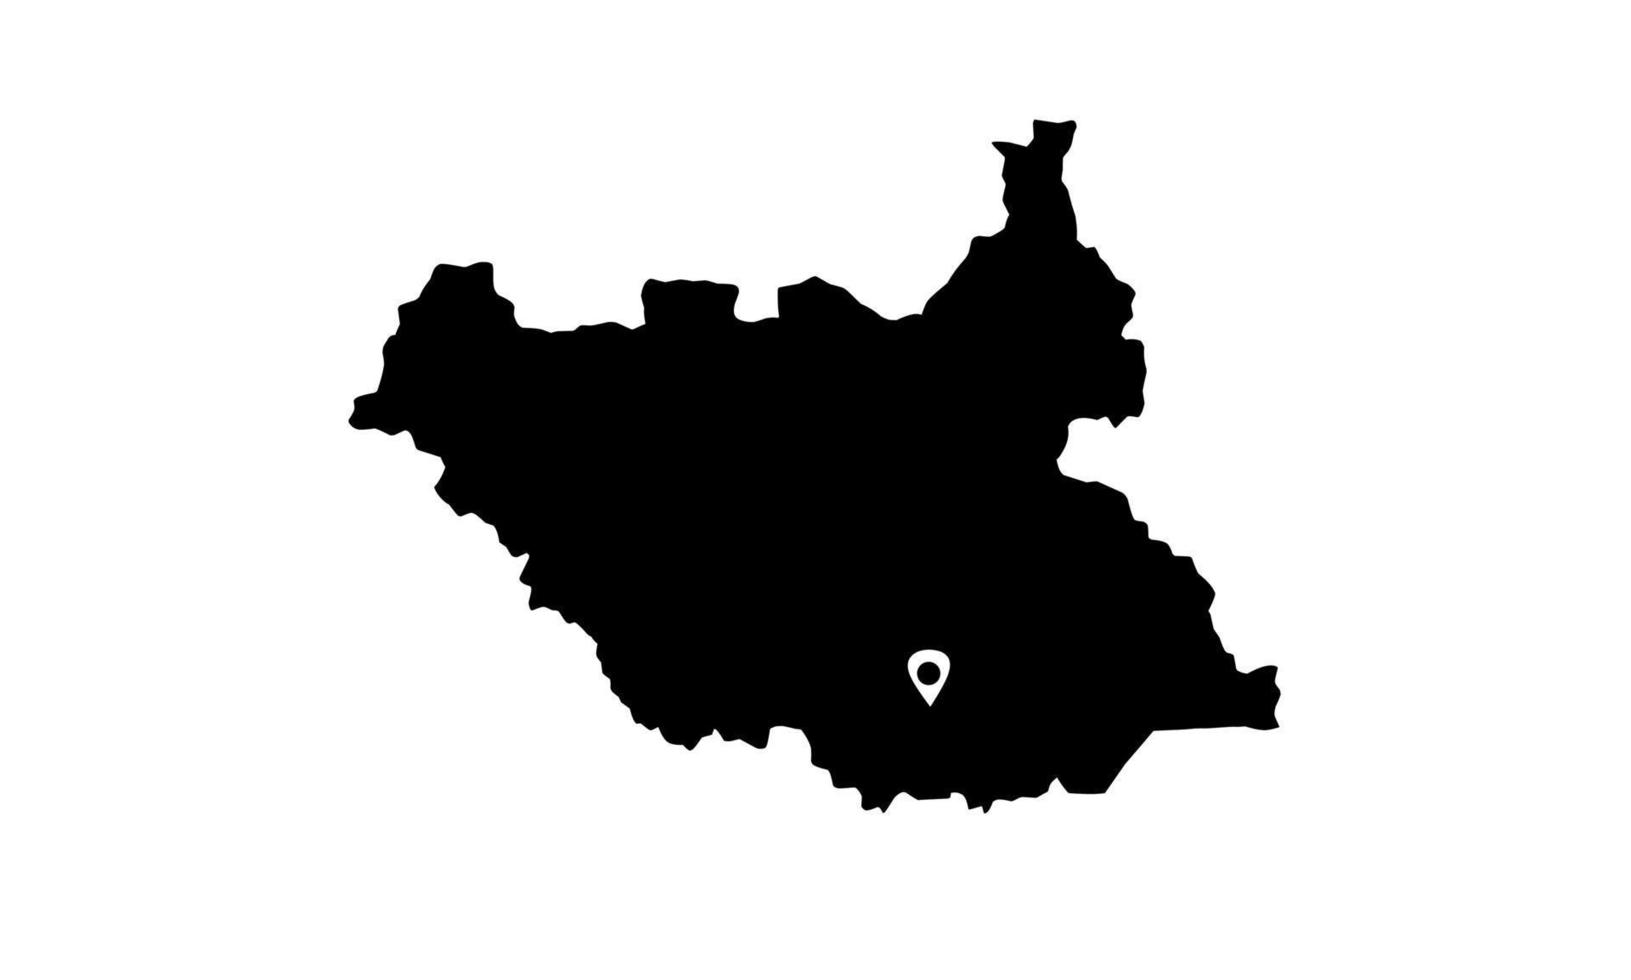 Juba mapa silueta negra sobre fondo blanco. vector